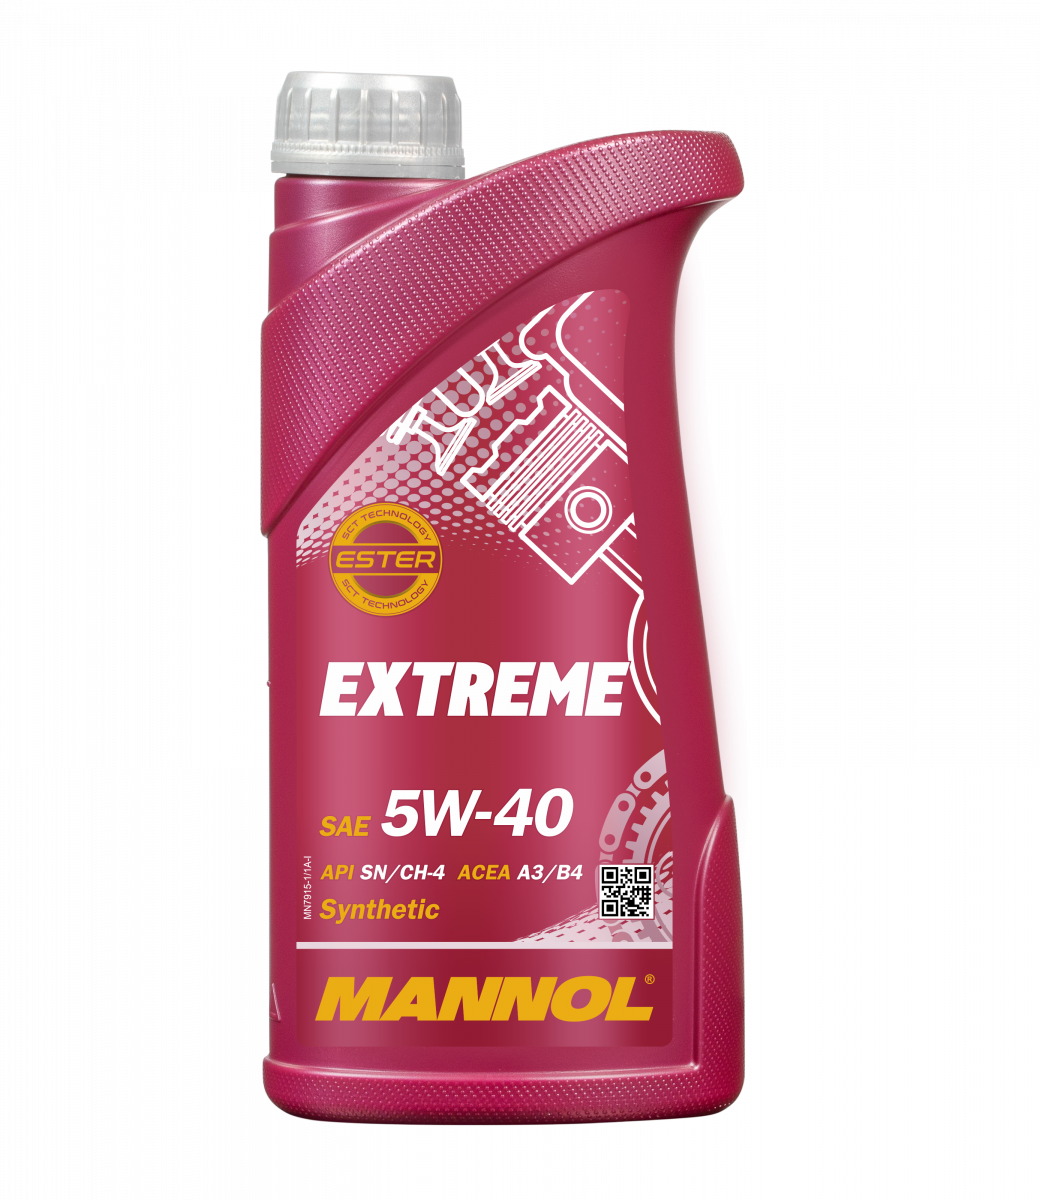 MANNOL Extreme 5W-40 7915 - MANNOL AUSTRALIA